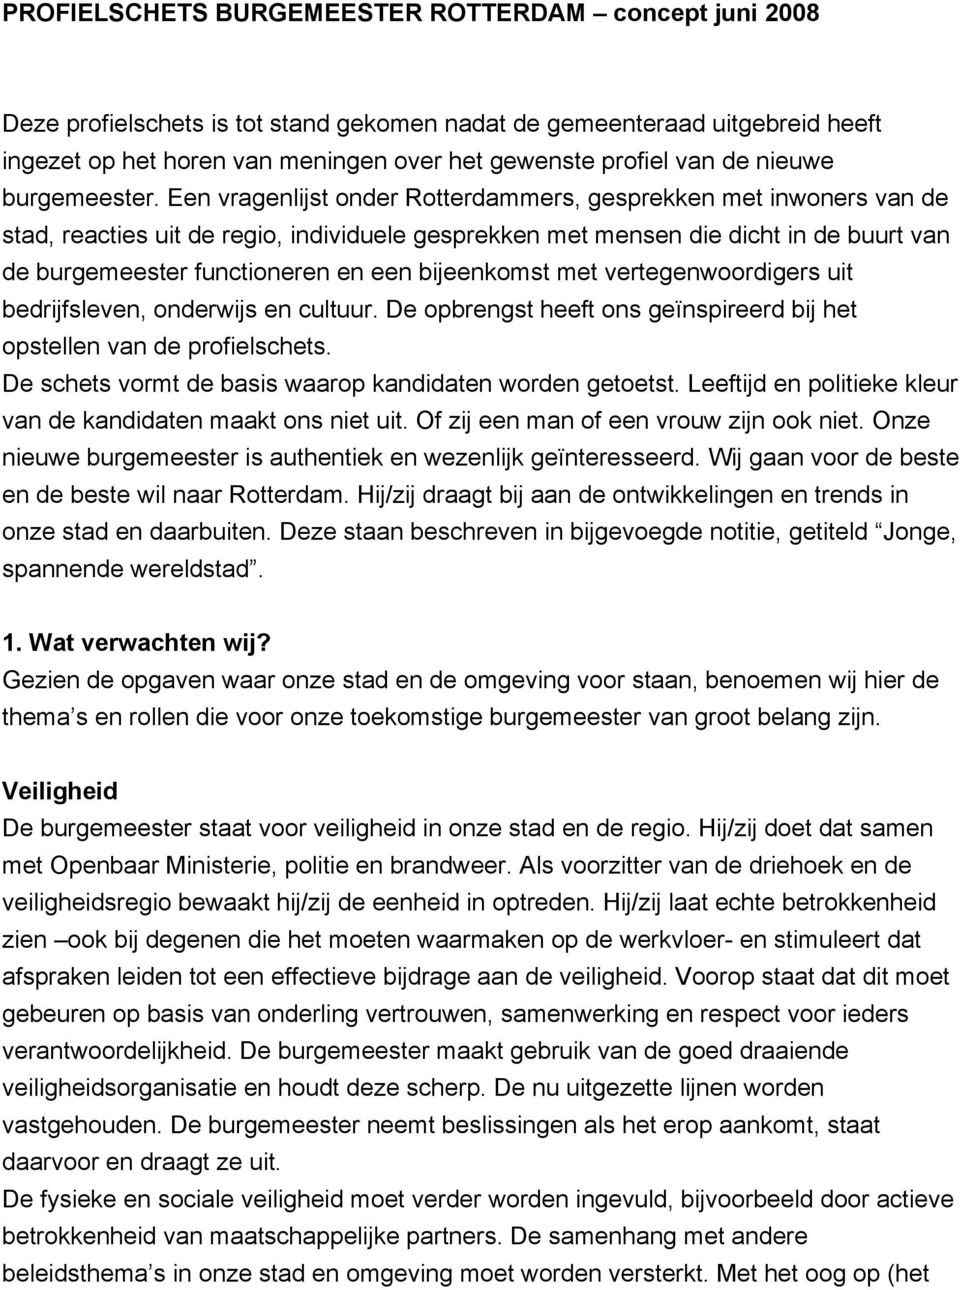 Een vragenlijst onder Rotterdammers, gesprekken met inwoners van de stad, reacties uit de regio, individuele gesprekken met mensen die dicht in de buurt van de burgemeester functioneren en een